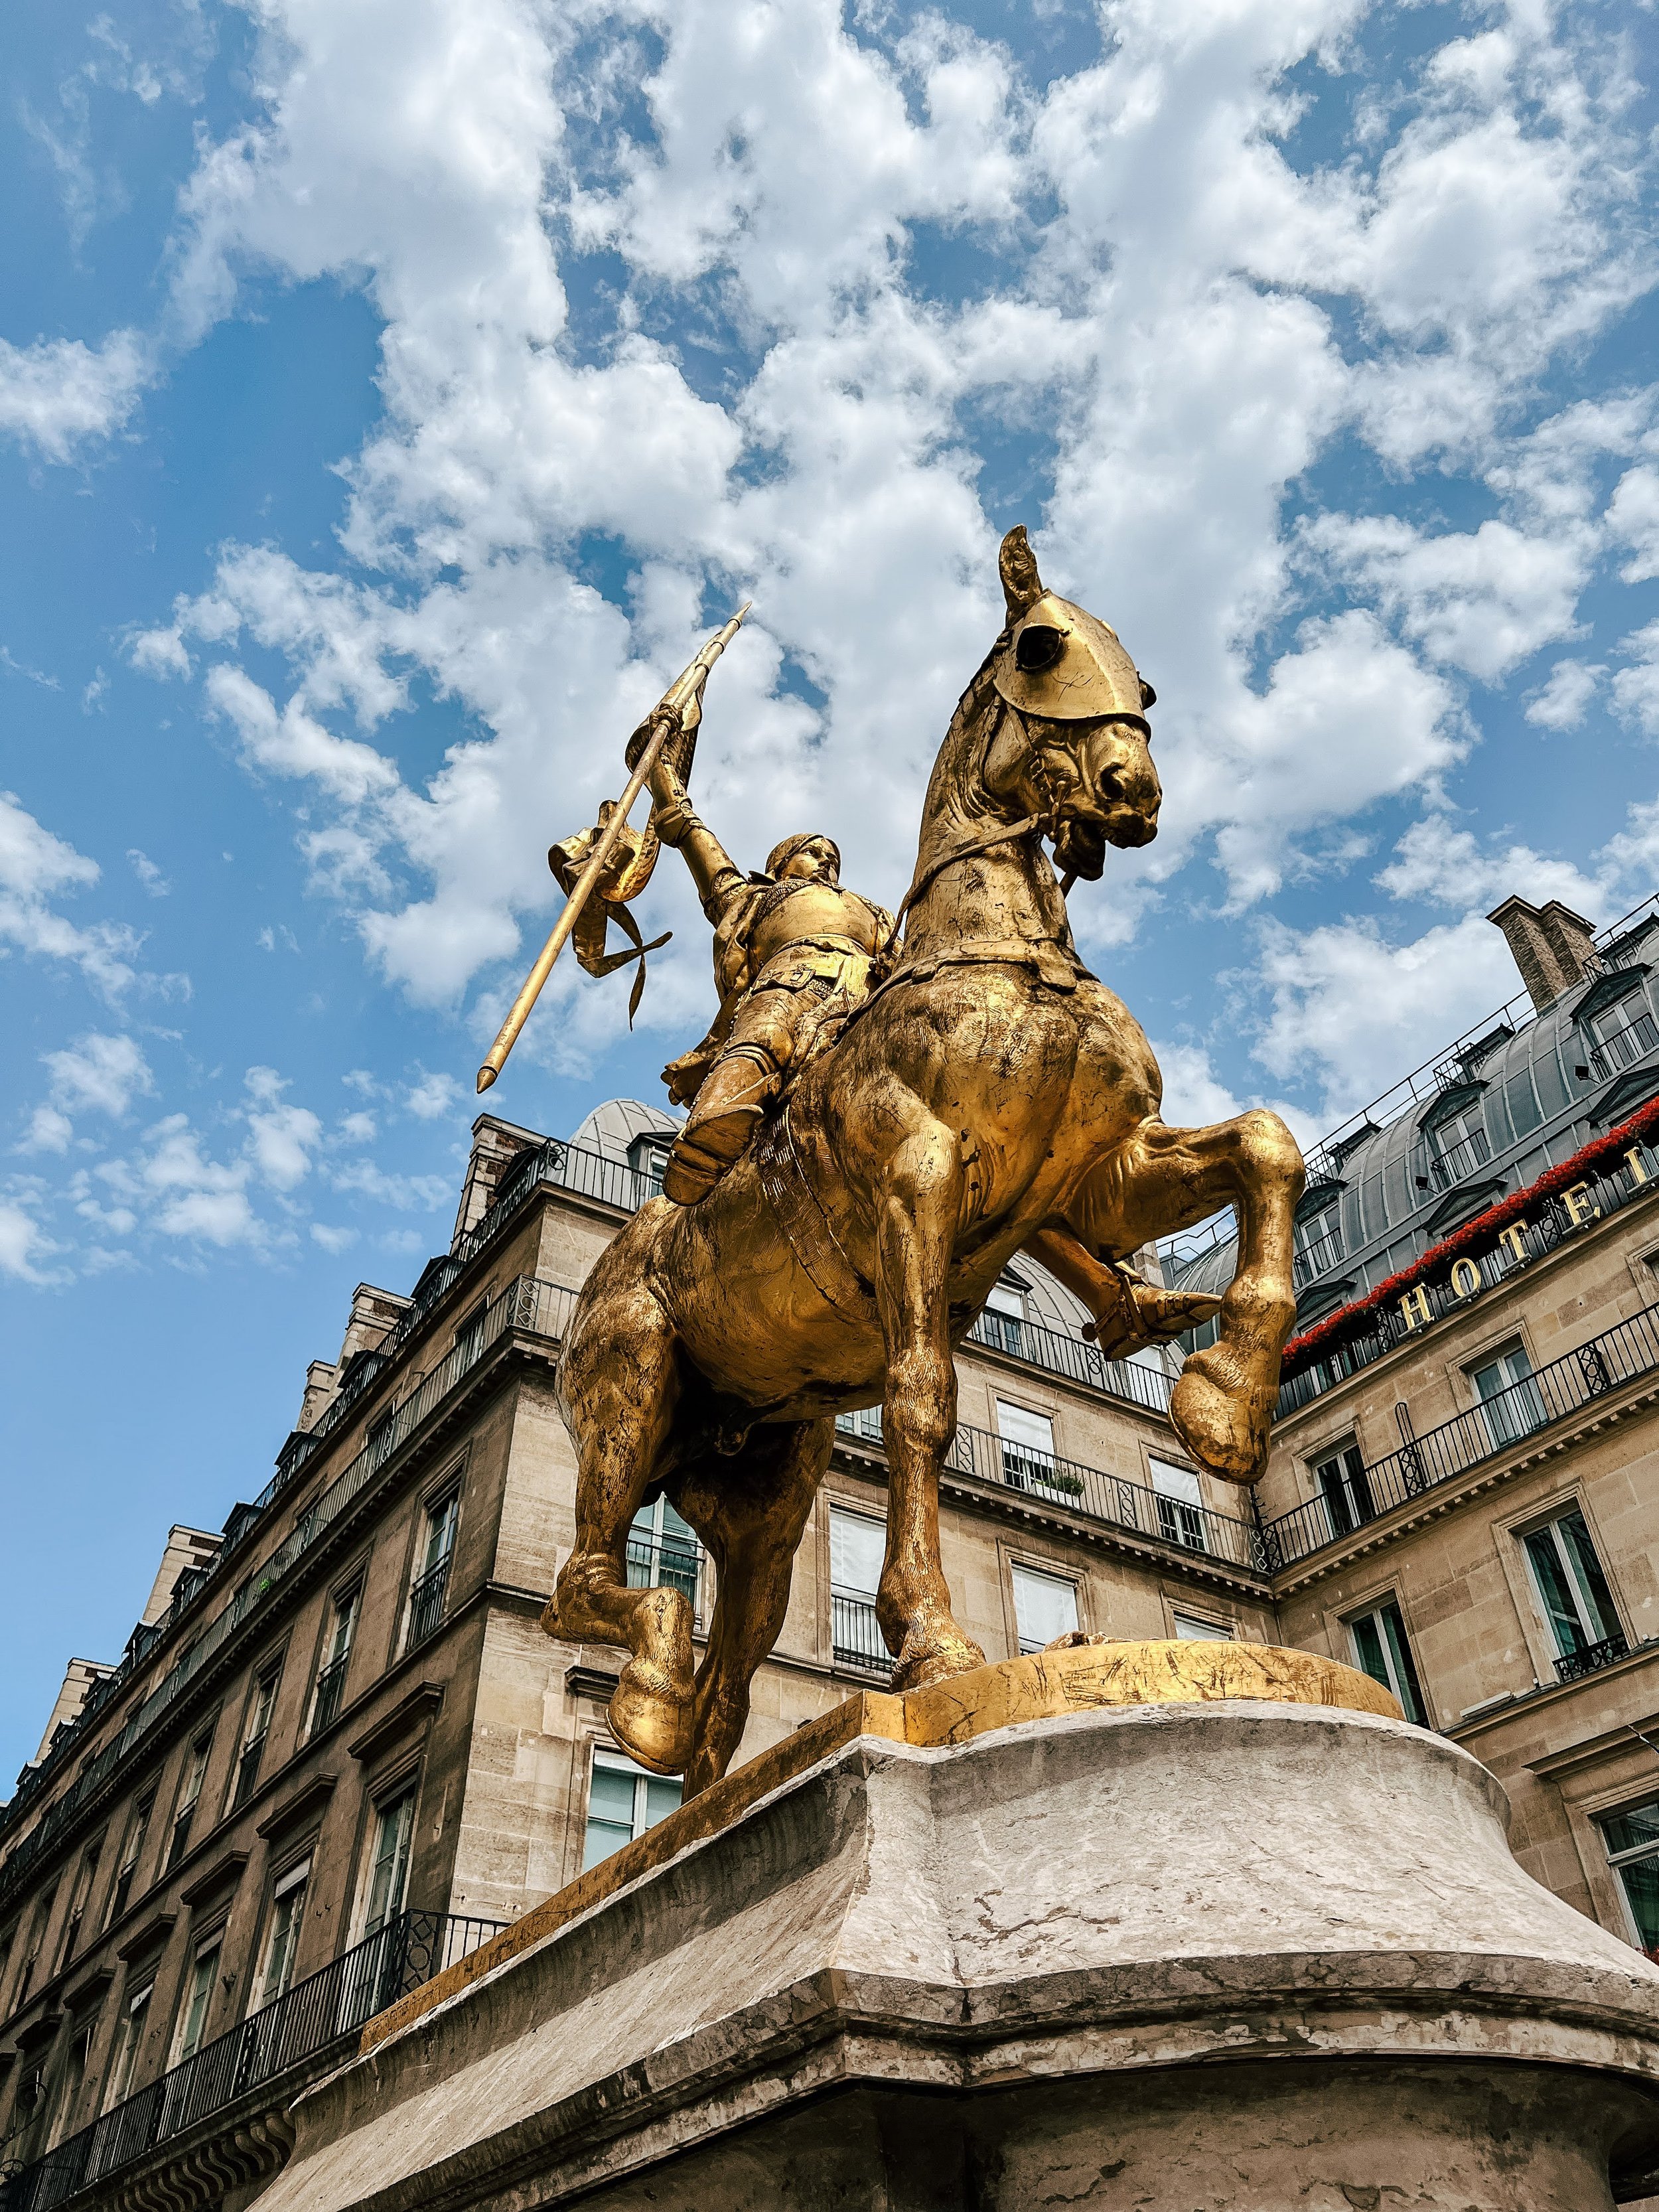  paris france golden horse statue  